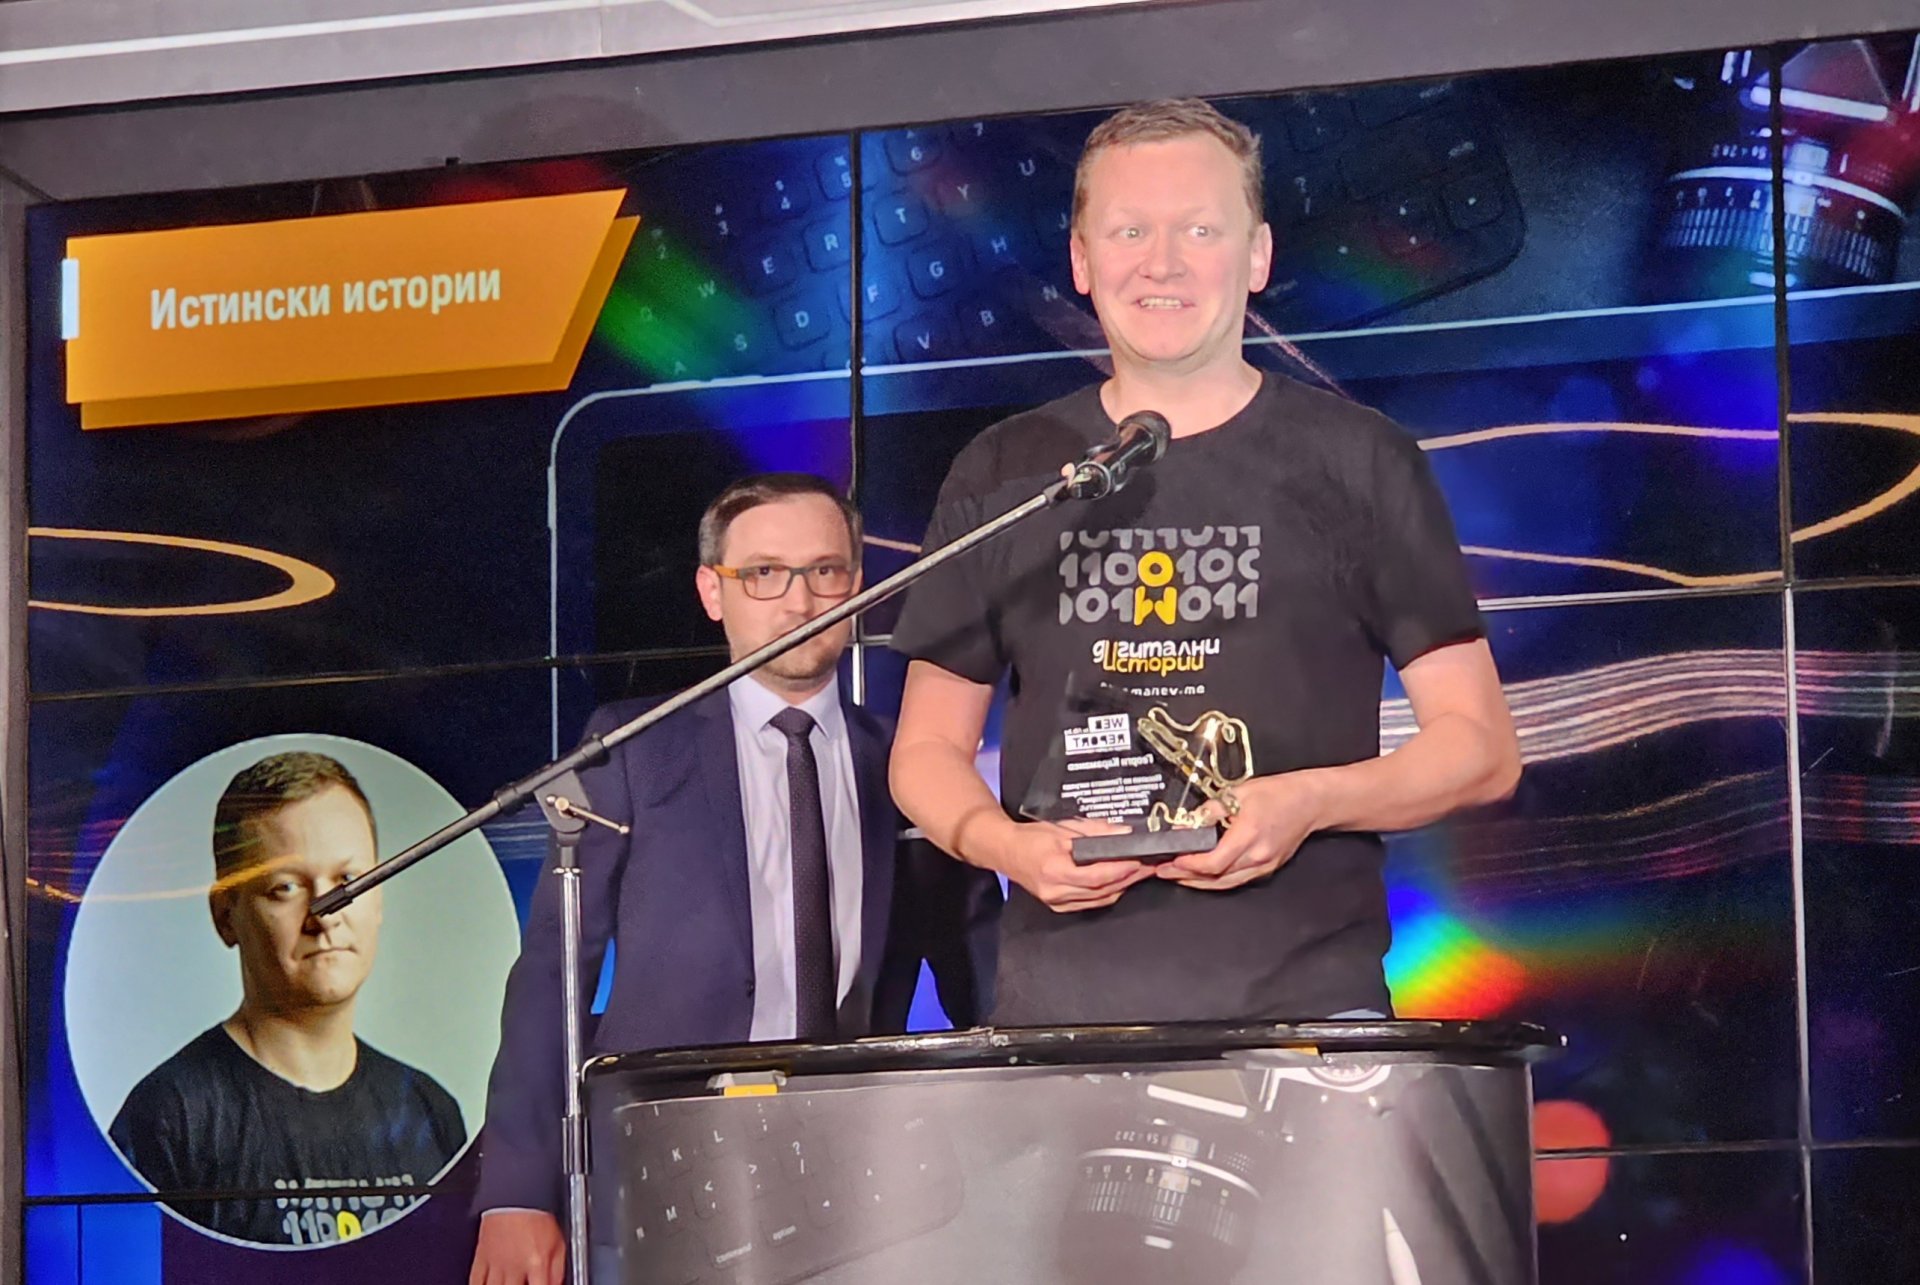 Георги Караманев е победителят в категория "Истински истории" на Web Report 2024